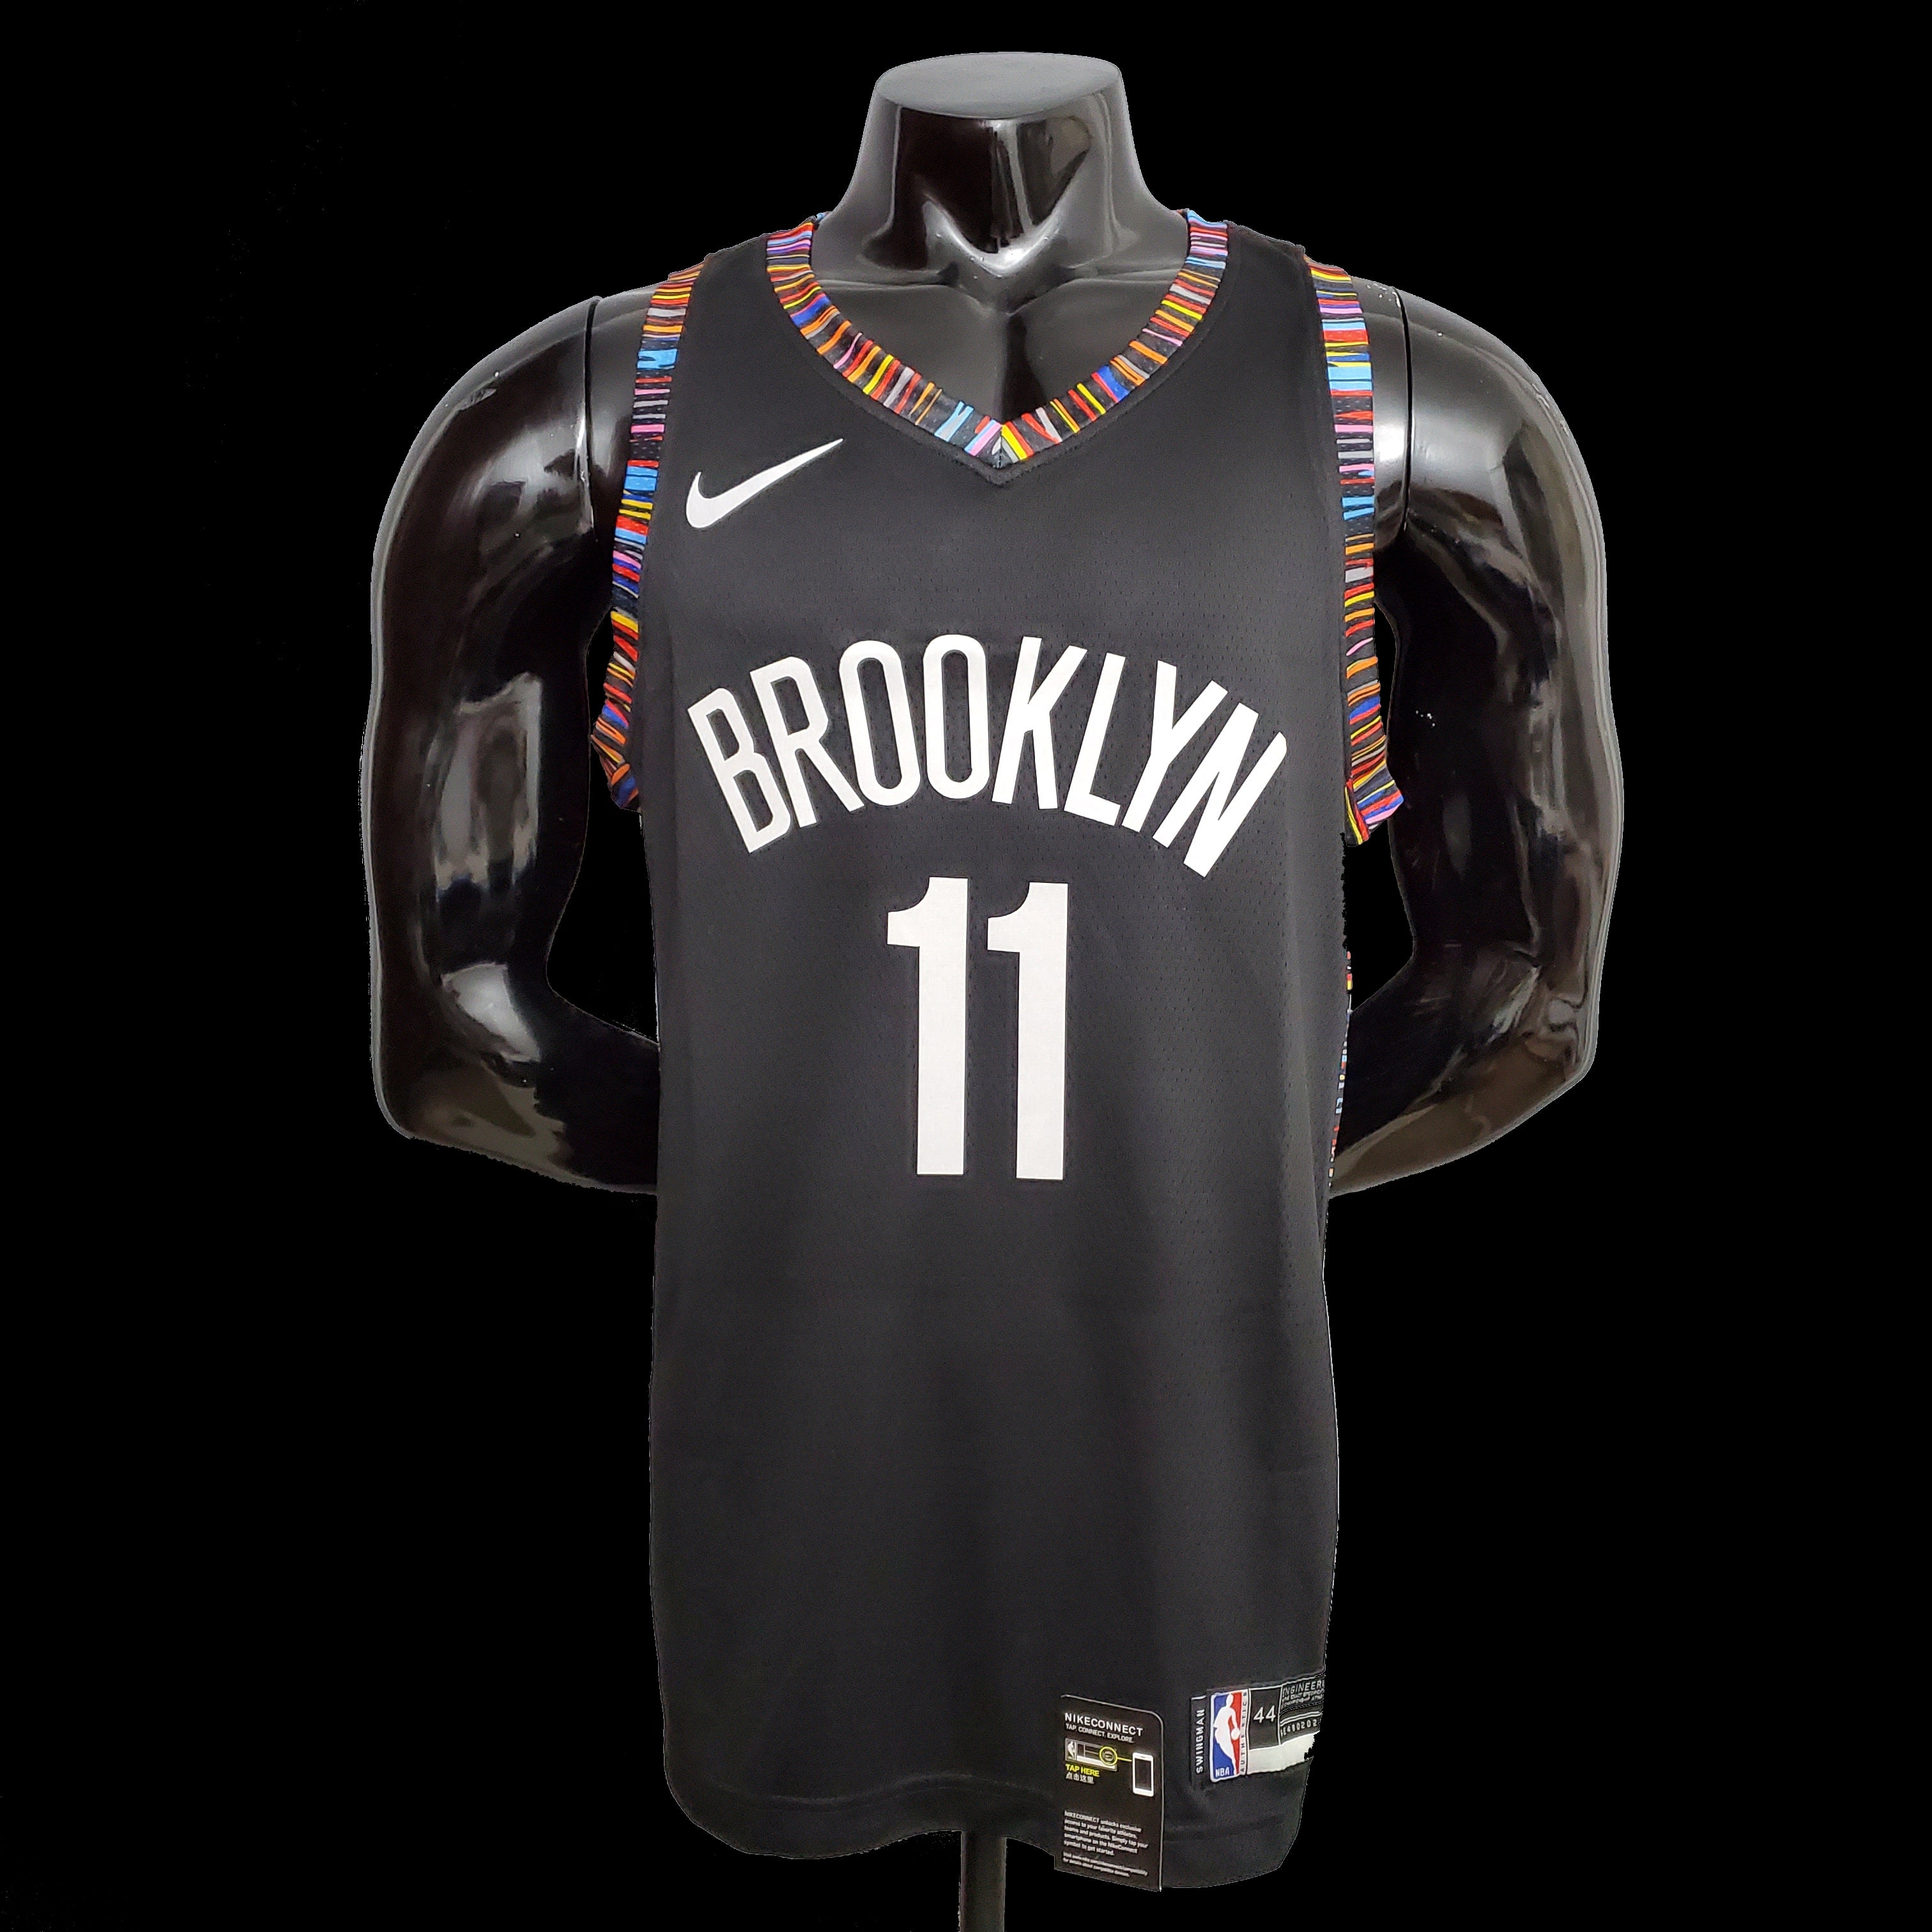 Brooklyn Nets Black NBA Jerseys for sale